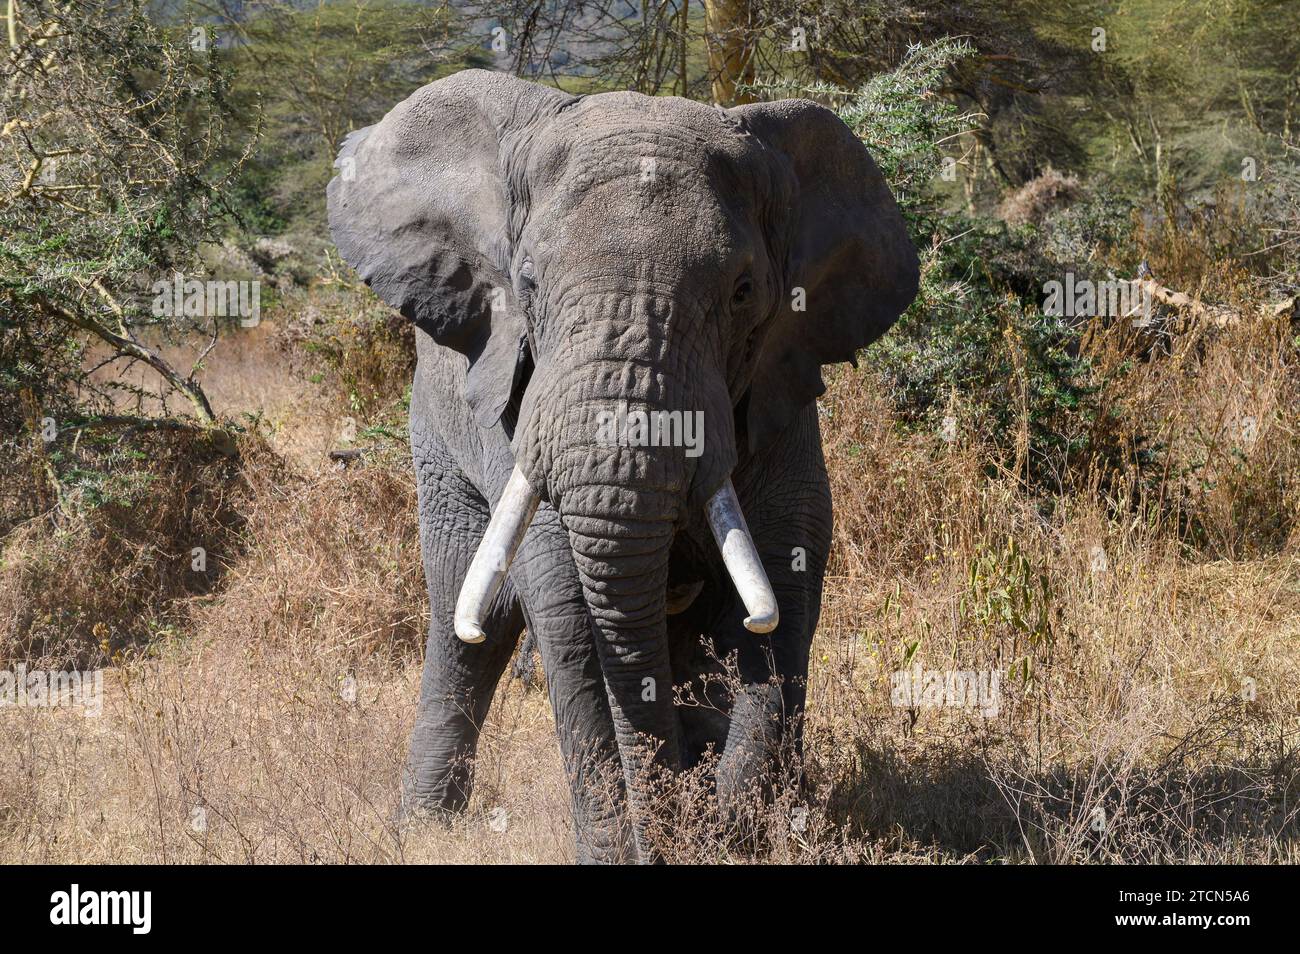 Großer männlicher Elefant mit Stoßzähnen in Musth, der langsamer durch das Gras des Ngorongoro-Kraters in Tansania, Afrika läuft Stockfoto